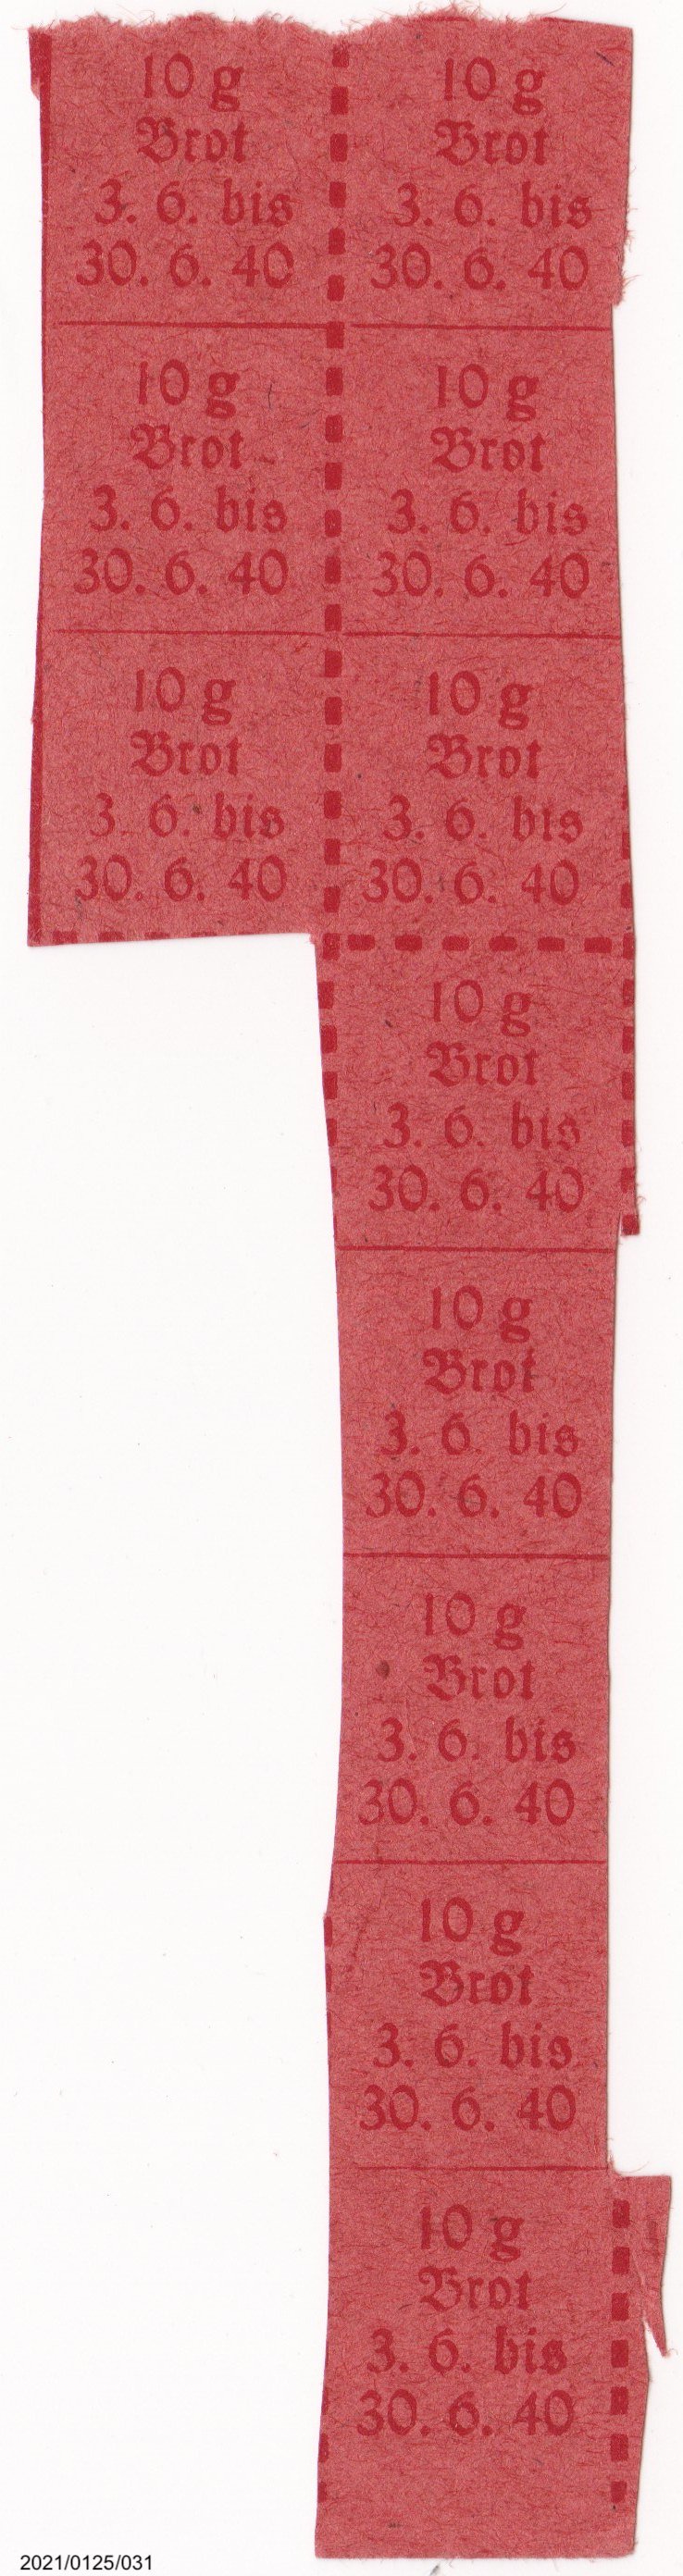 Lebensmittelmarke für 10g Brot 1940 (Museumsgesellschaft Bad Dürkheim e. V. CC BY-NC-SA)